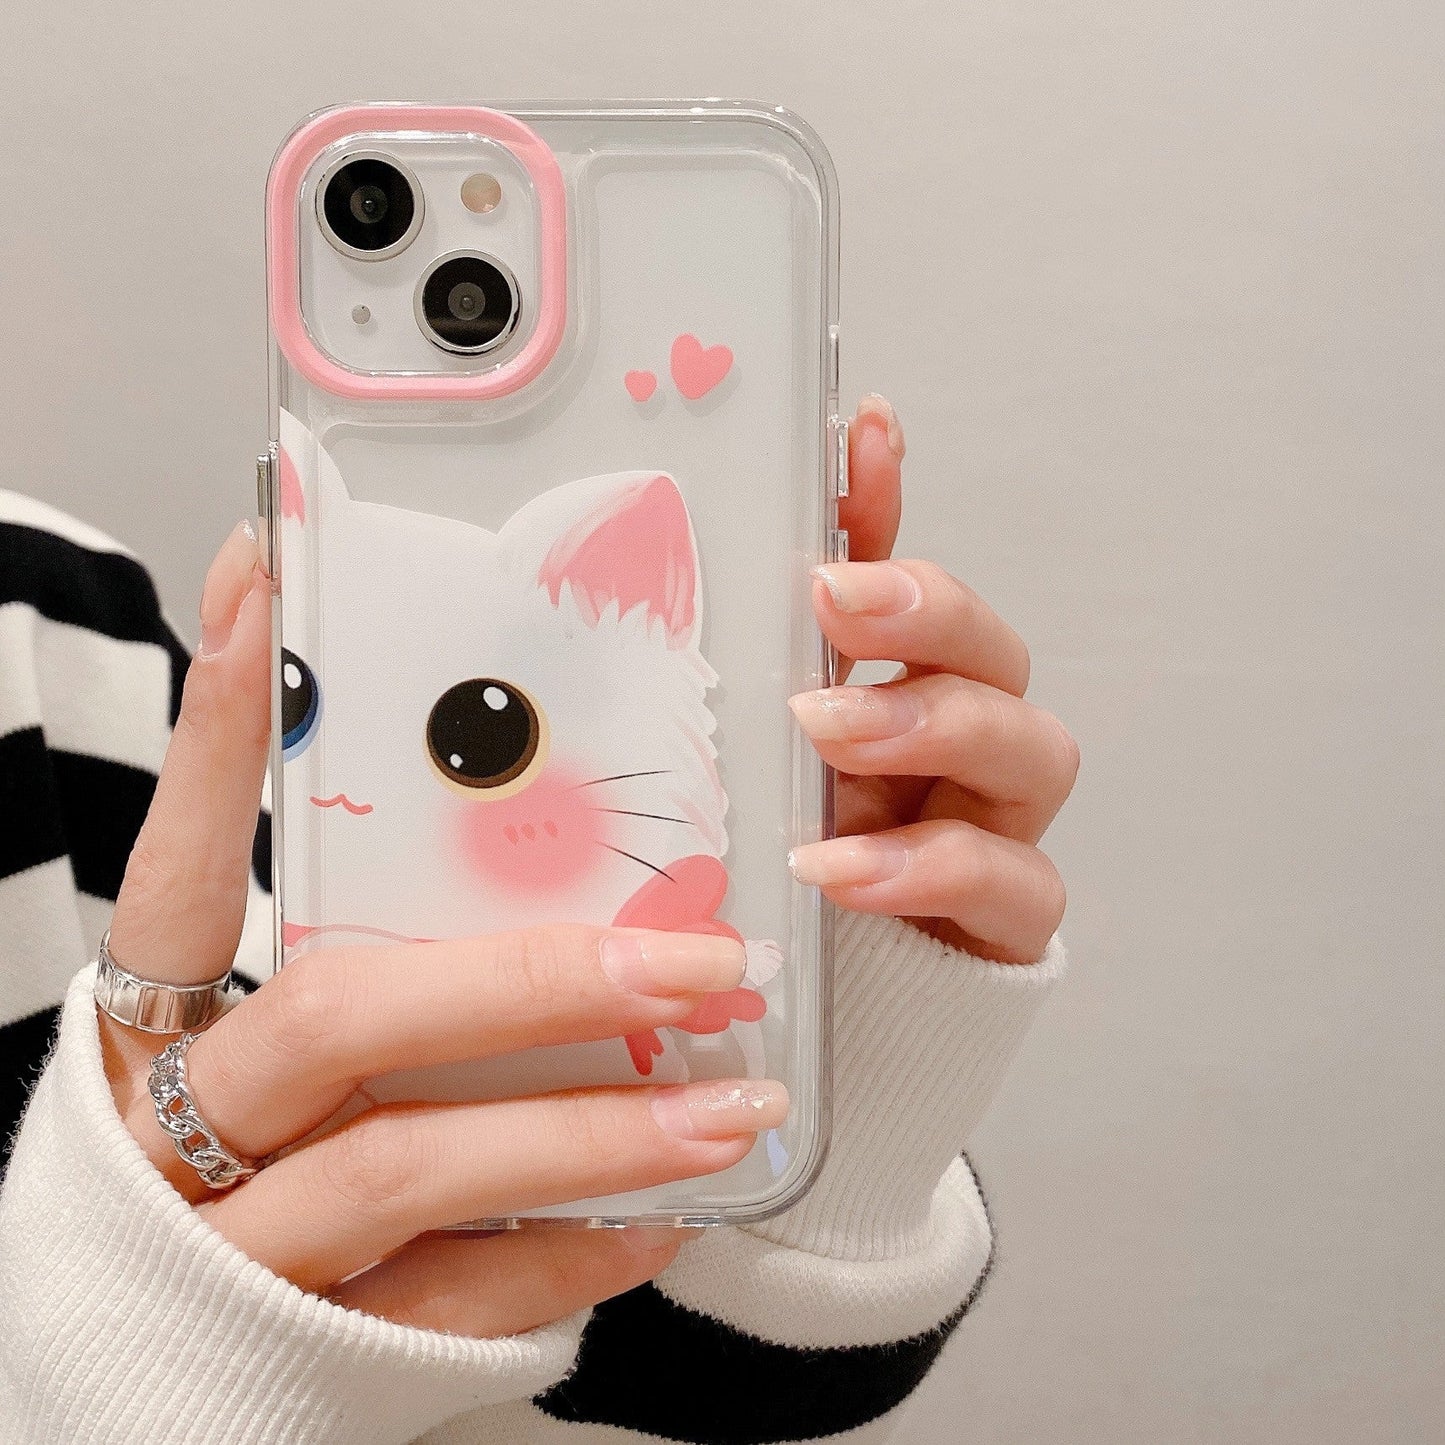 Dessin animé mignon animal chat transparent compatible avec l'étui pour iPhone